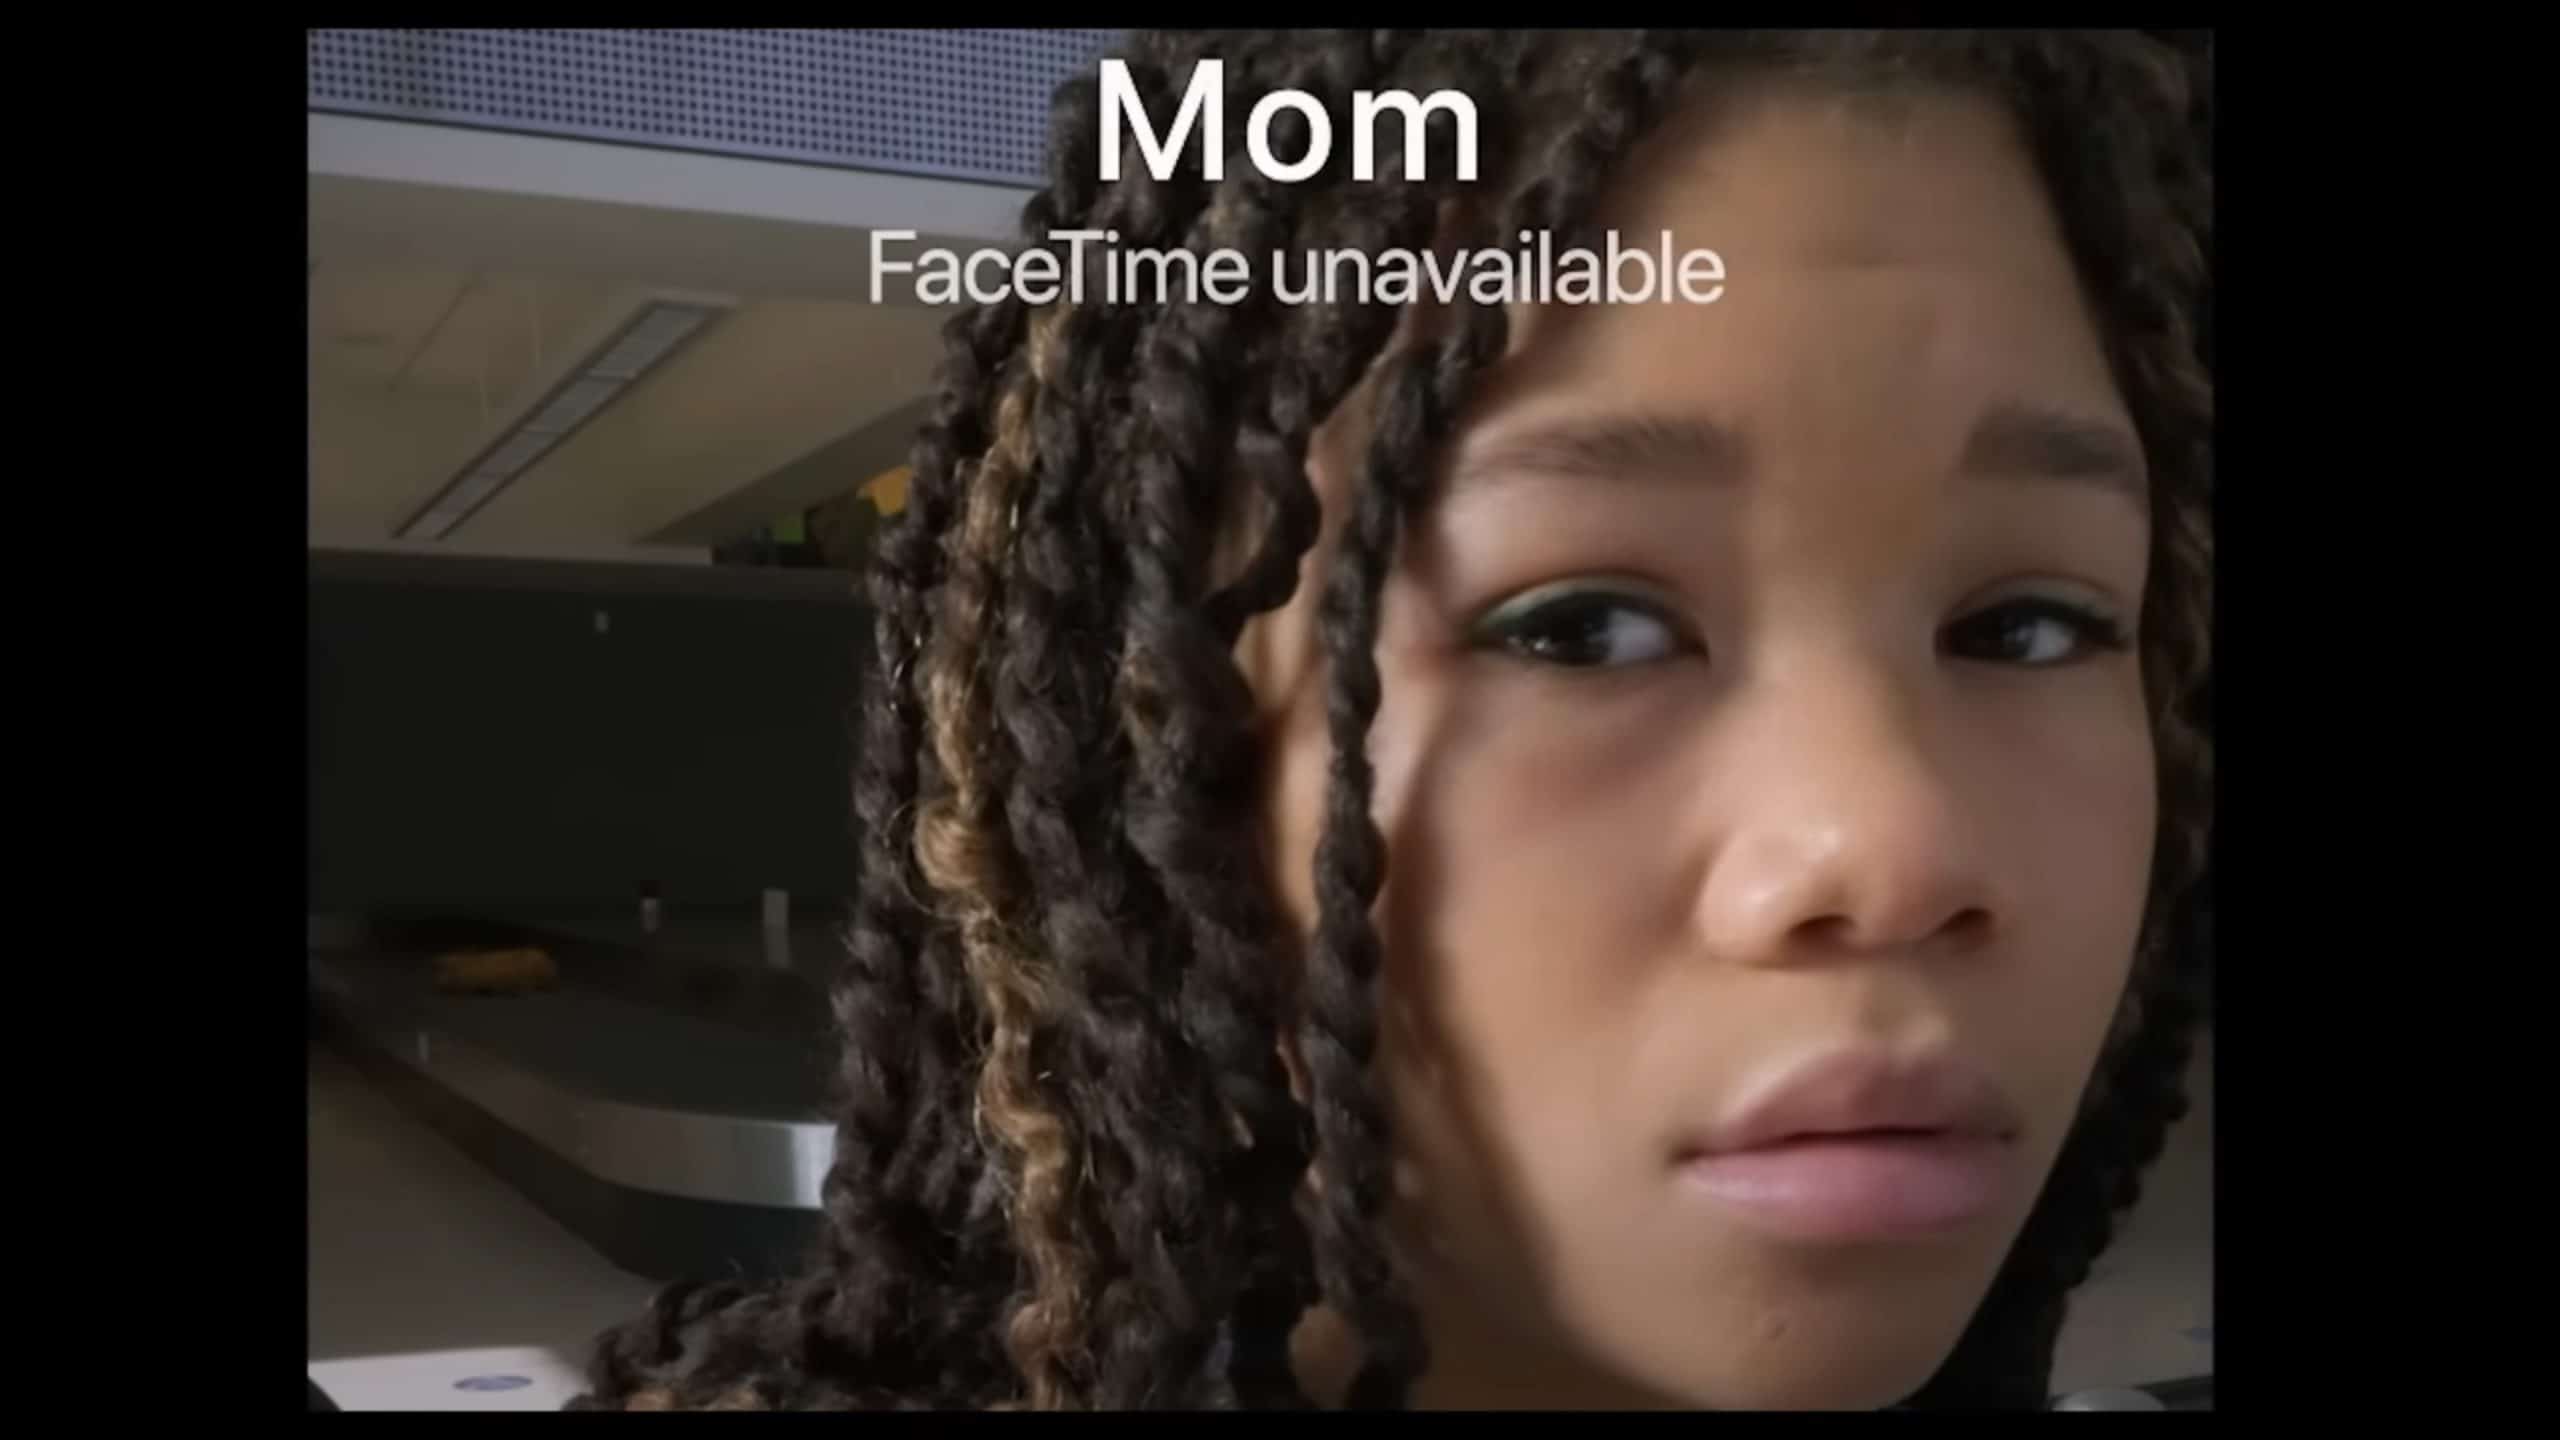 June Allen (Storm Reid) trying to facetime her mom